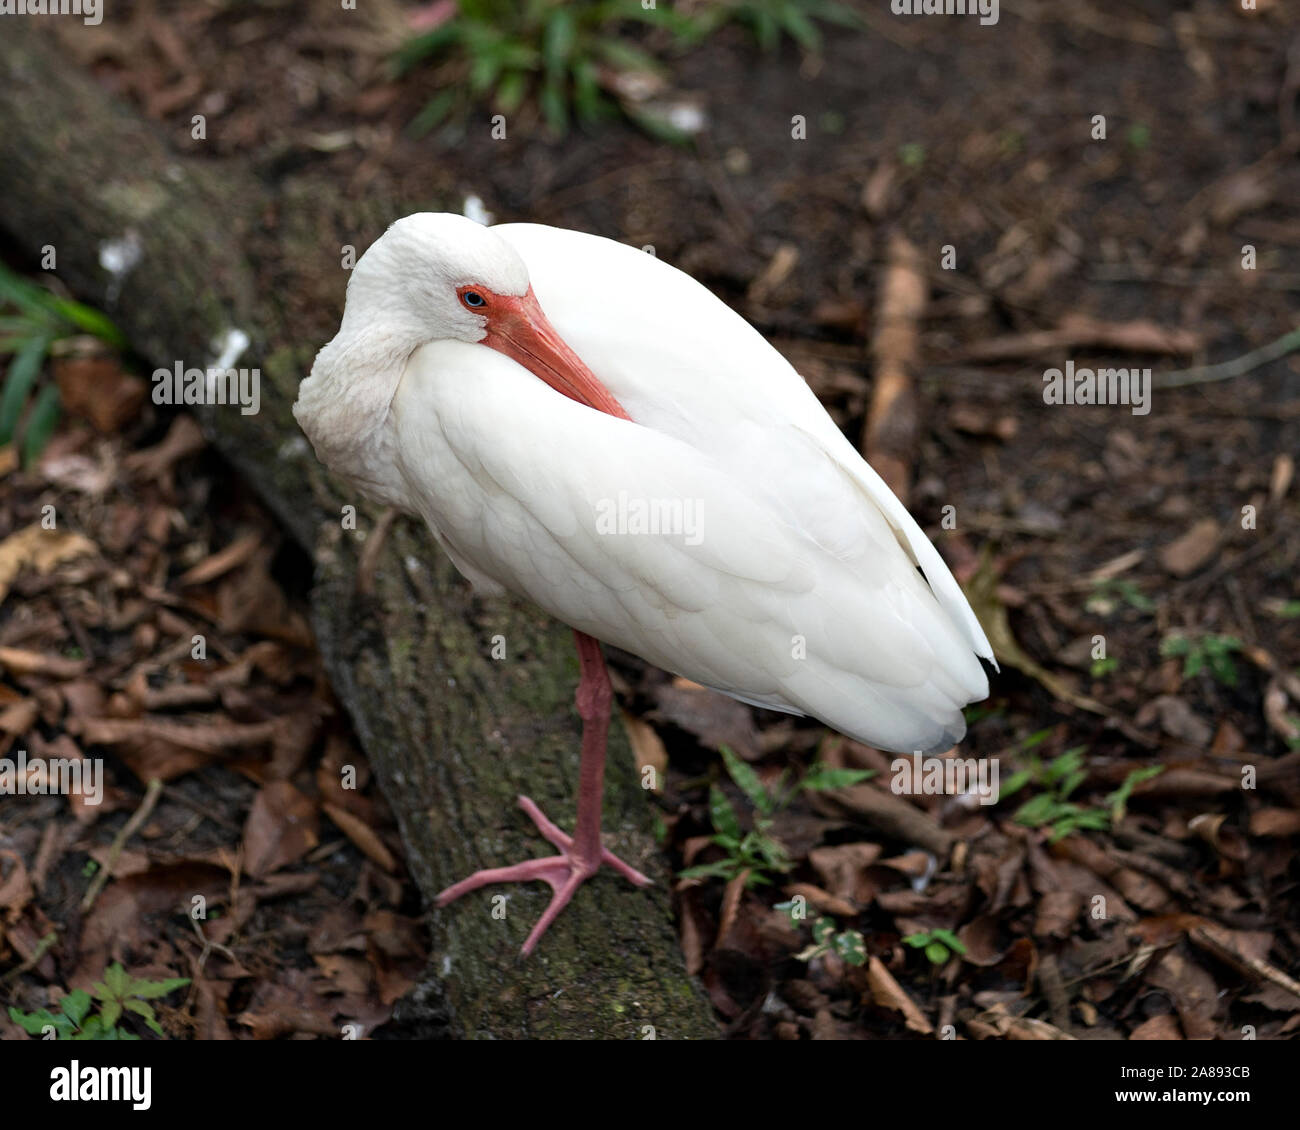 White Ibis Vogel Nahaufnahme, ruht auf seinen Körper, Kopf, Augen, Schnabel log aussetzen, Hals, Füße, in seiner Umwelt und Umgebung. Stockfoto